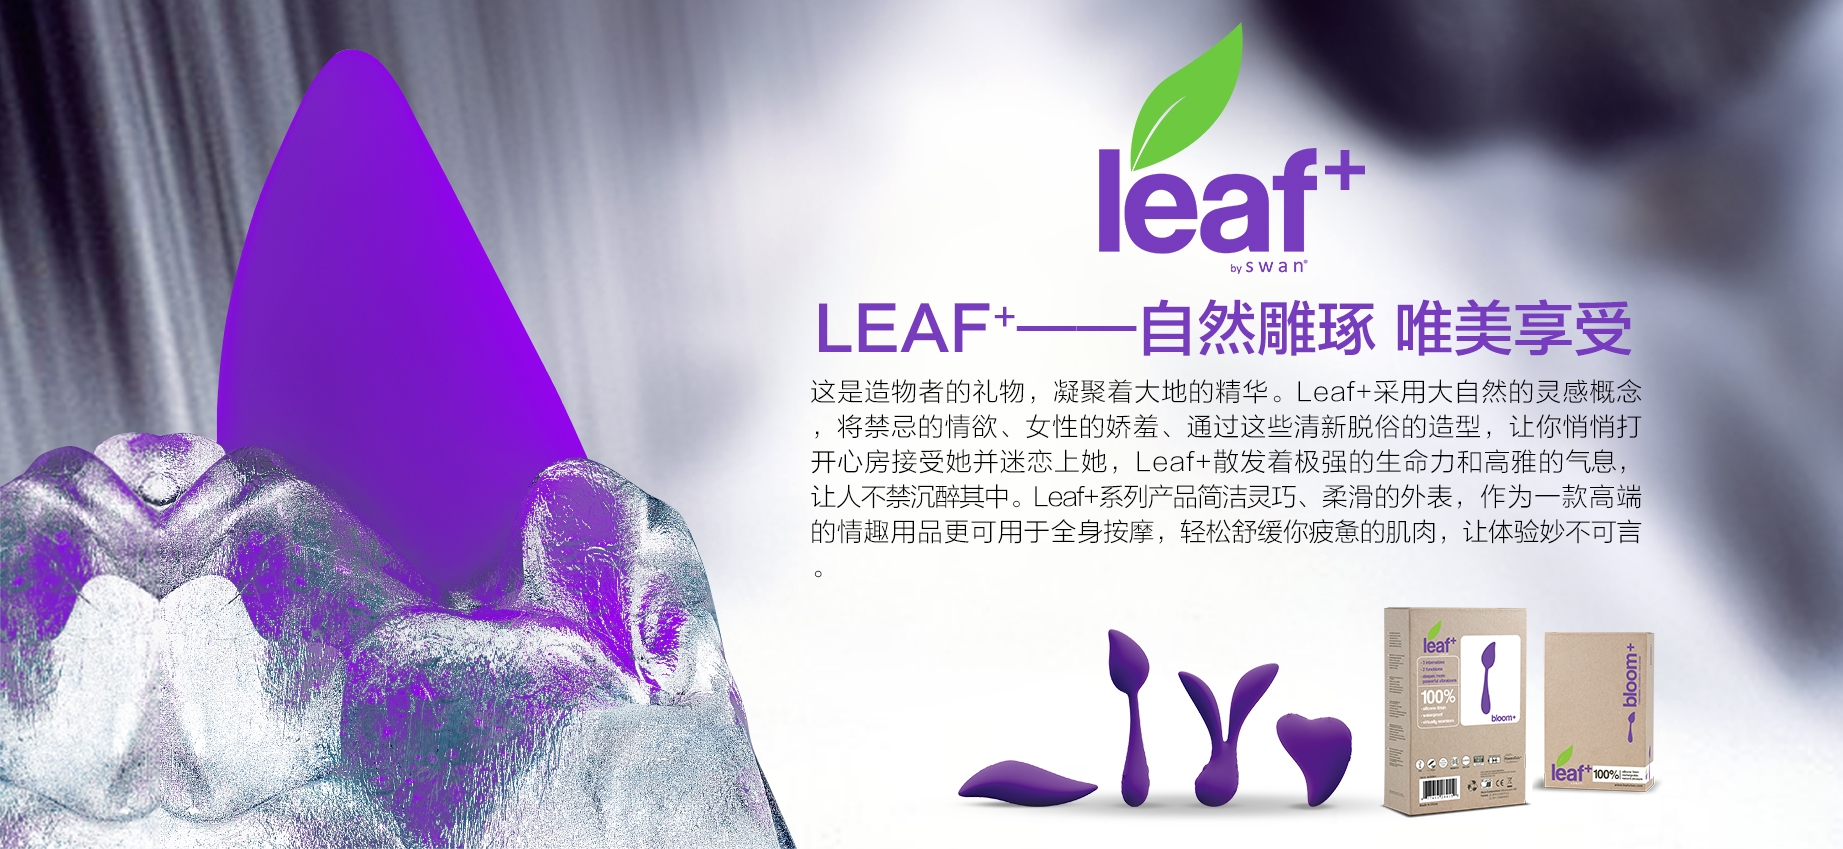 官网详情leaf+.jpg